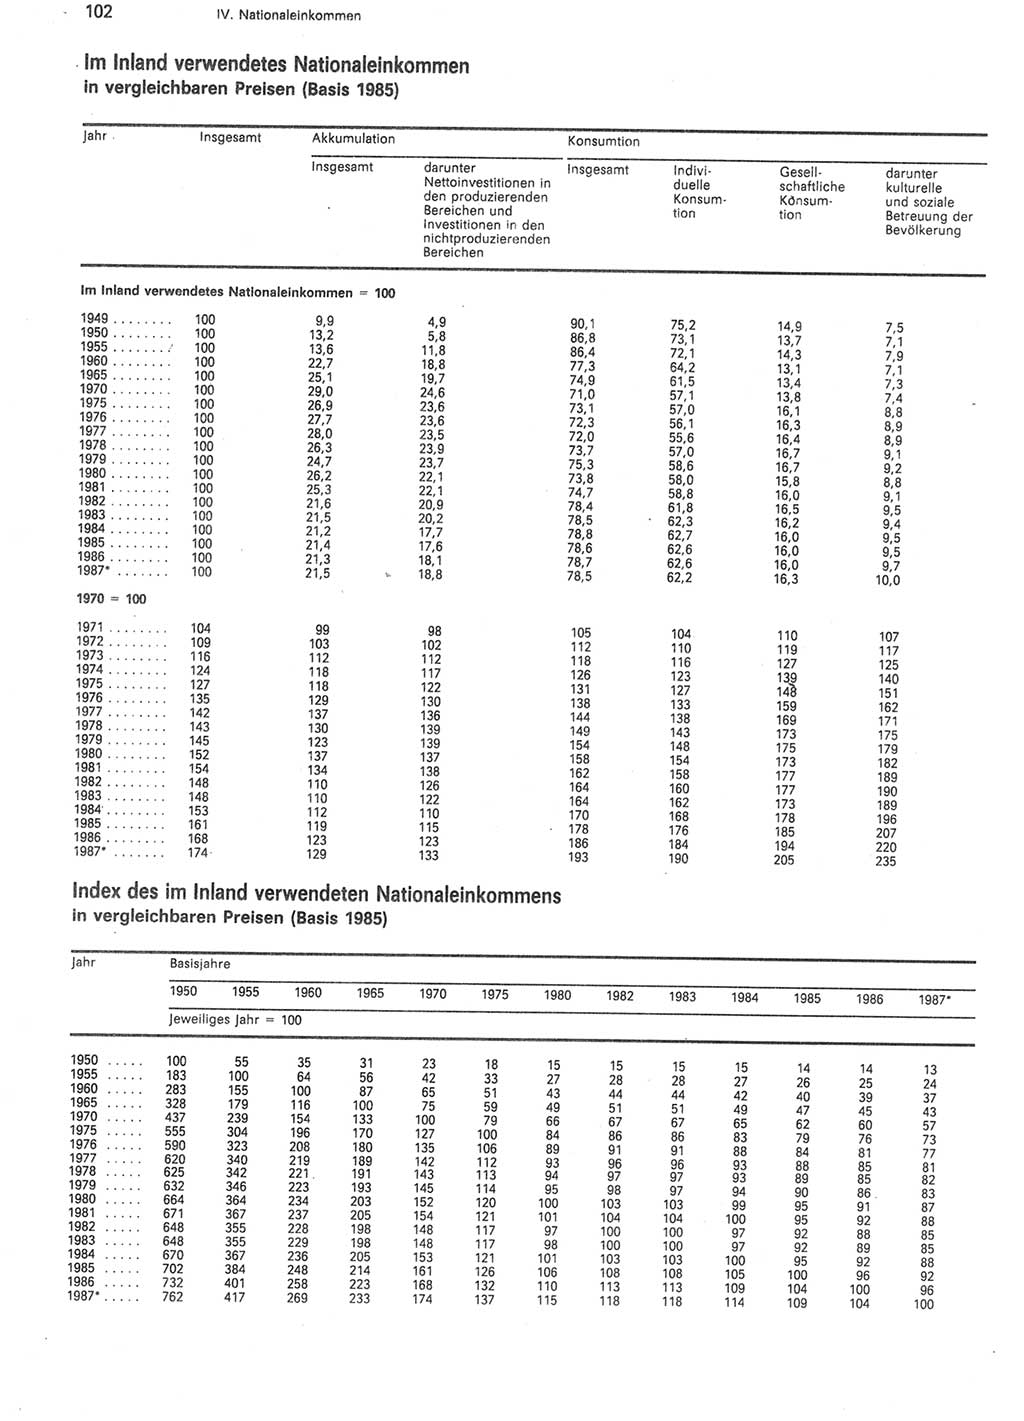 Statistisches Jahrbuch der Deutschen Demokratischen Republik (DDR) 1988, Seite 102 (Stat. Jb. DDR 1988, S. 102)